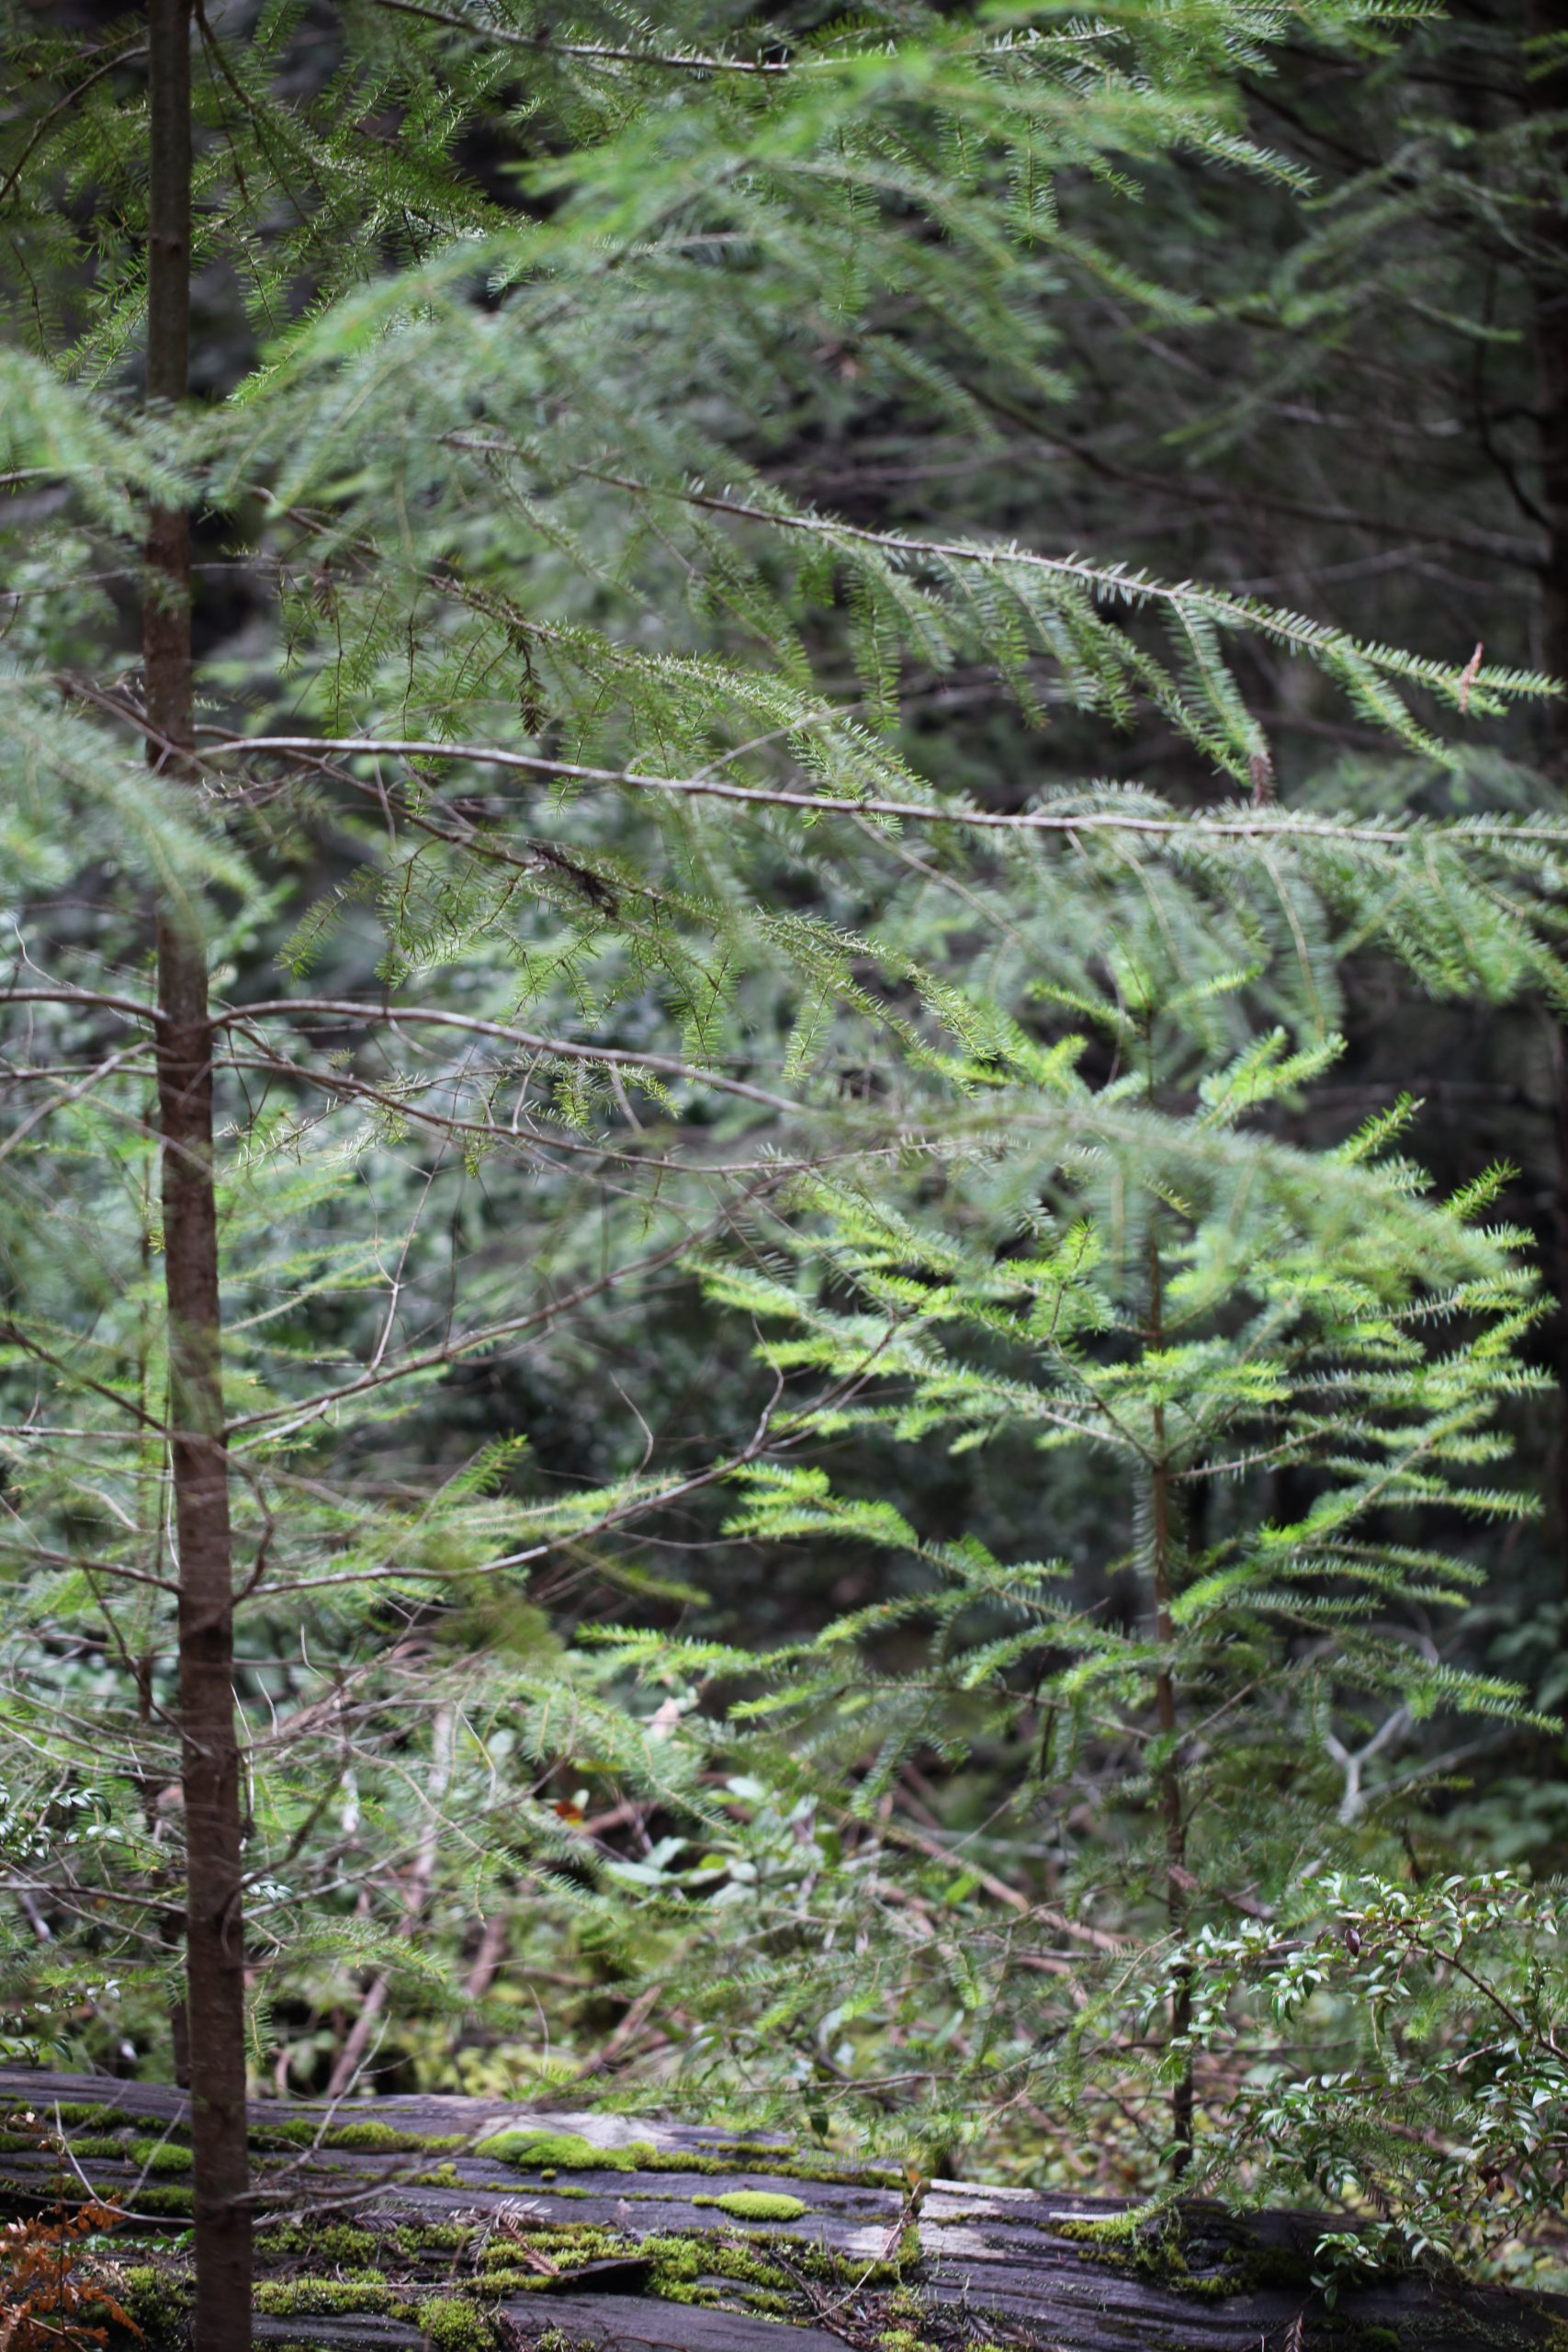 Image of juvenile doug fir trees